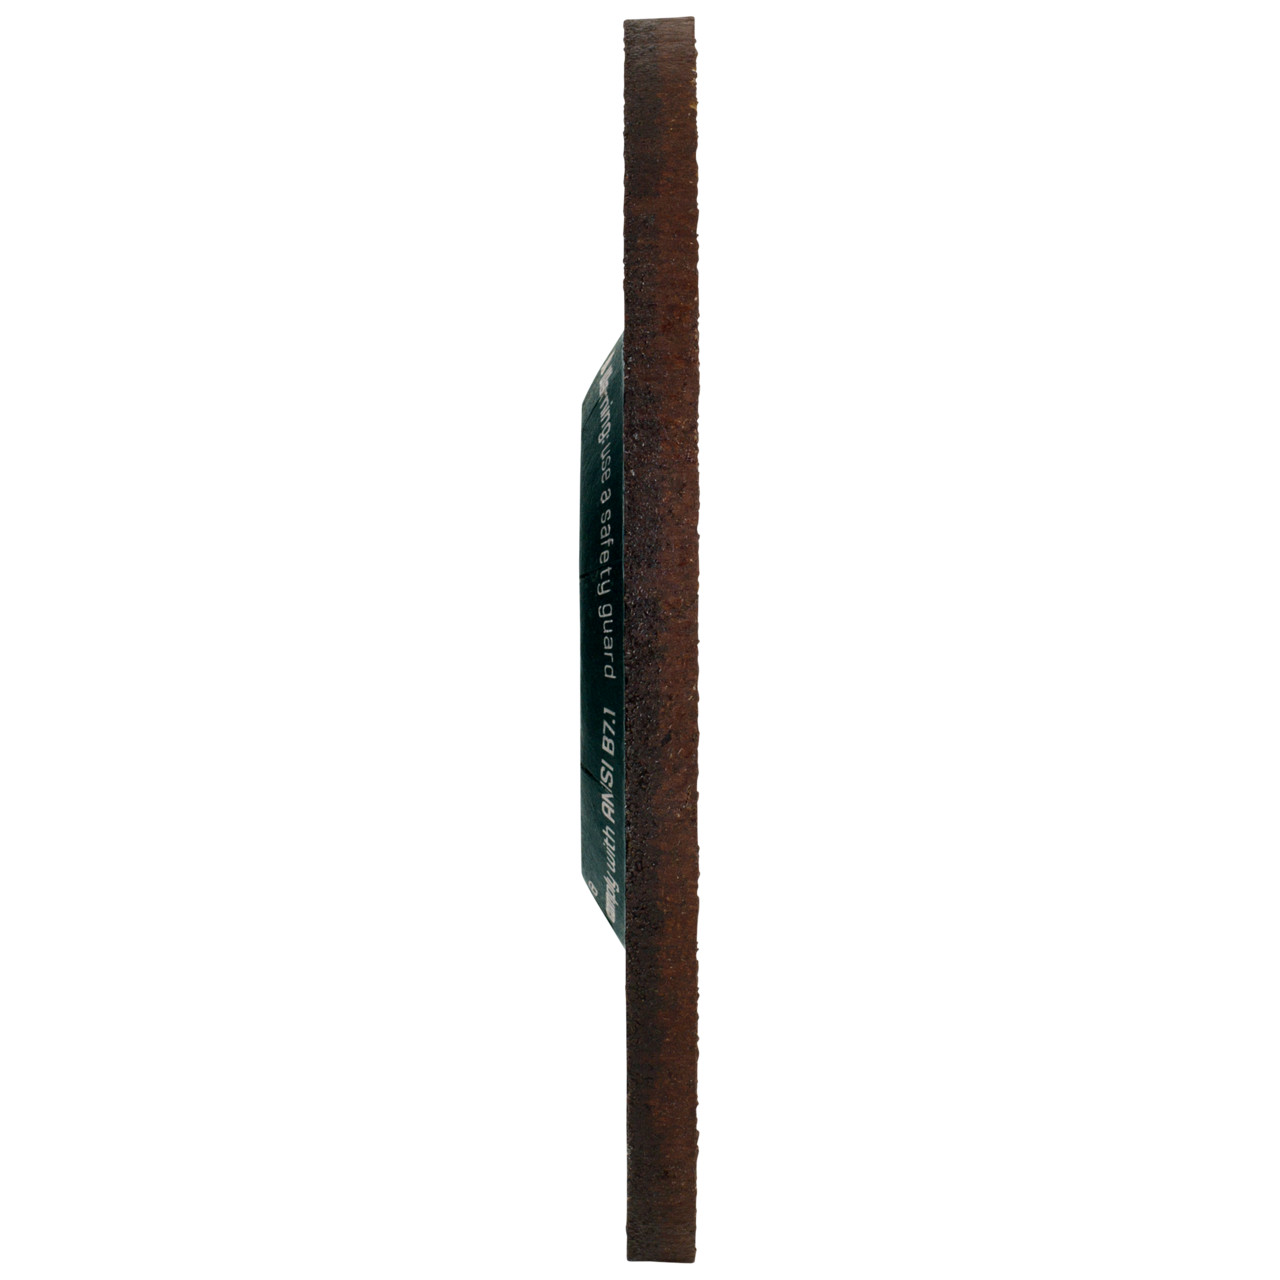 Tyrolit Voorslijpschijf DxUxH 230x4x22,23 CERABOND X voor staal en roestvast staal